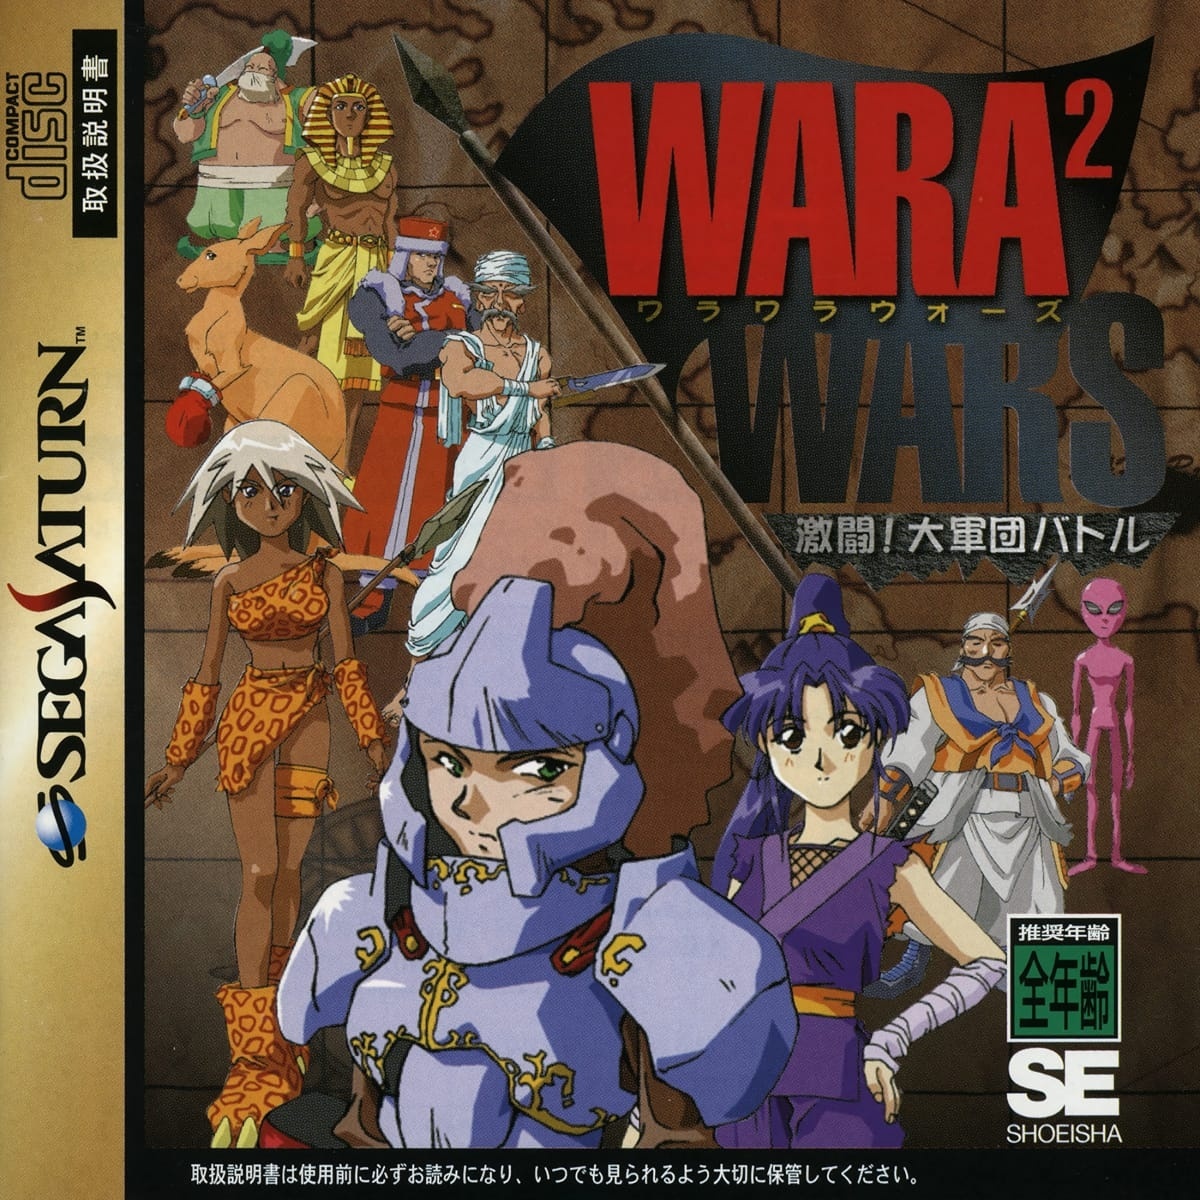 Capa do jogo Wara² Wars: Gekitou! Daigundan Battle